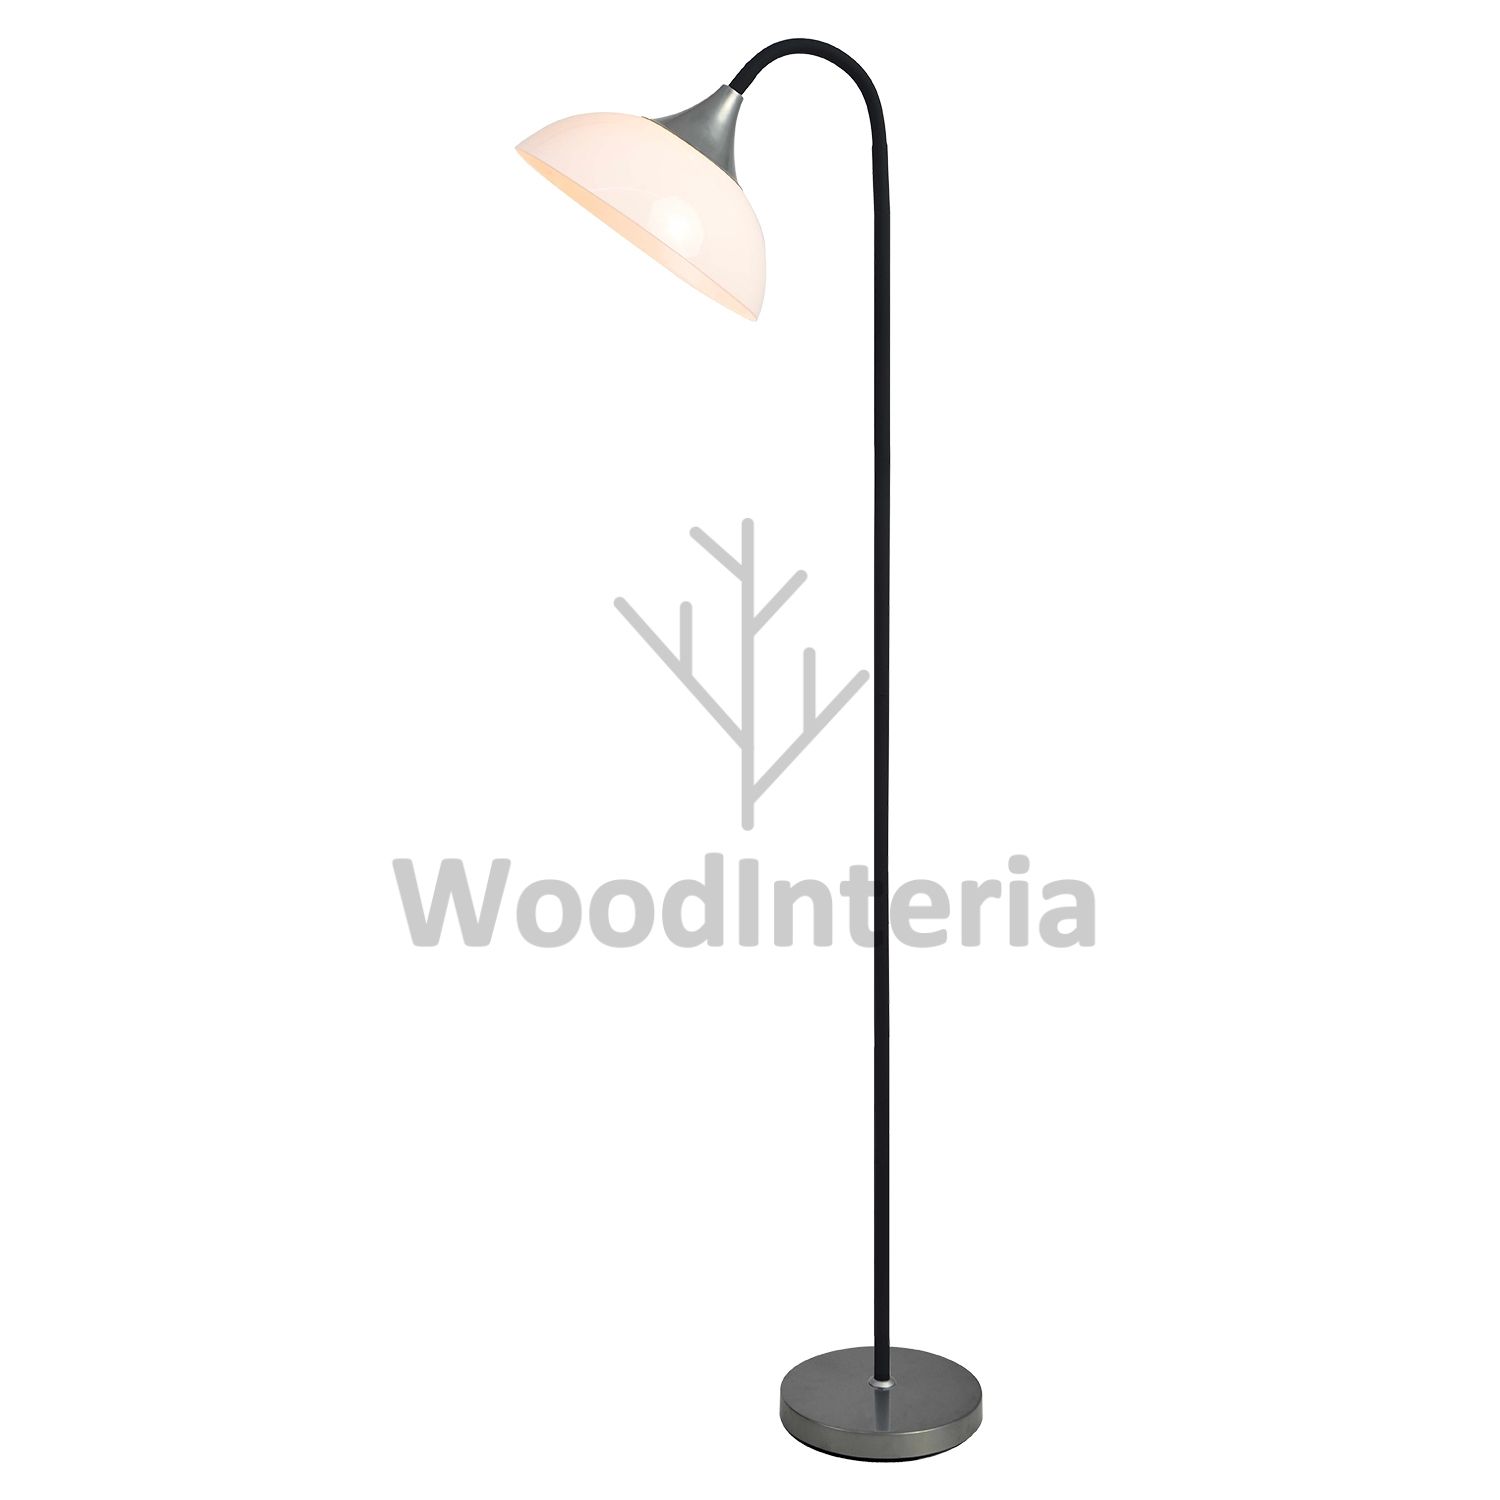 фото напольная лампа umbrella handle black в скандинавском интерьере лофт эко | WoodInteria